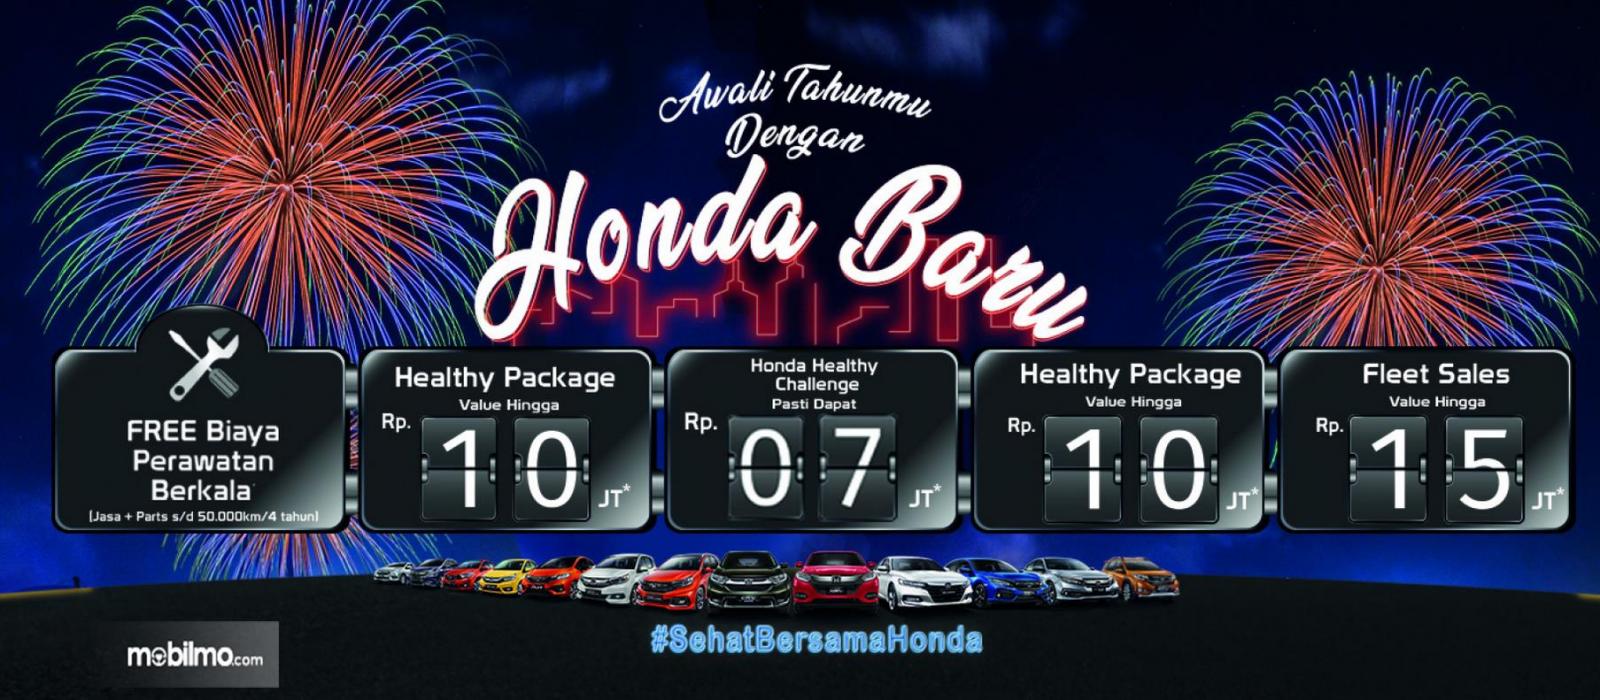 Gambar ini menunjukkan program Honda lebih lengkap